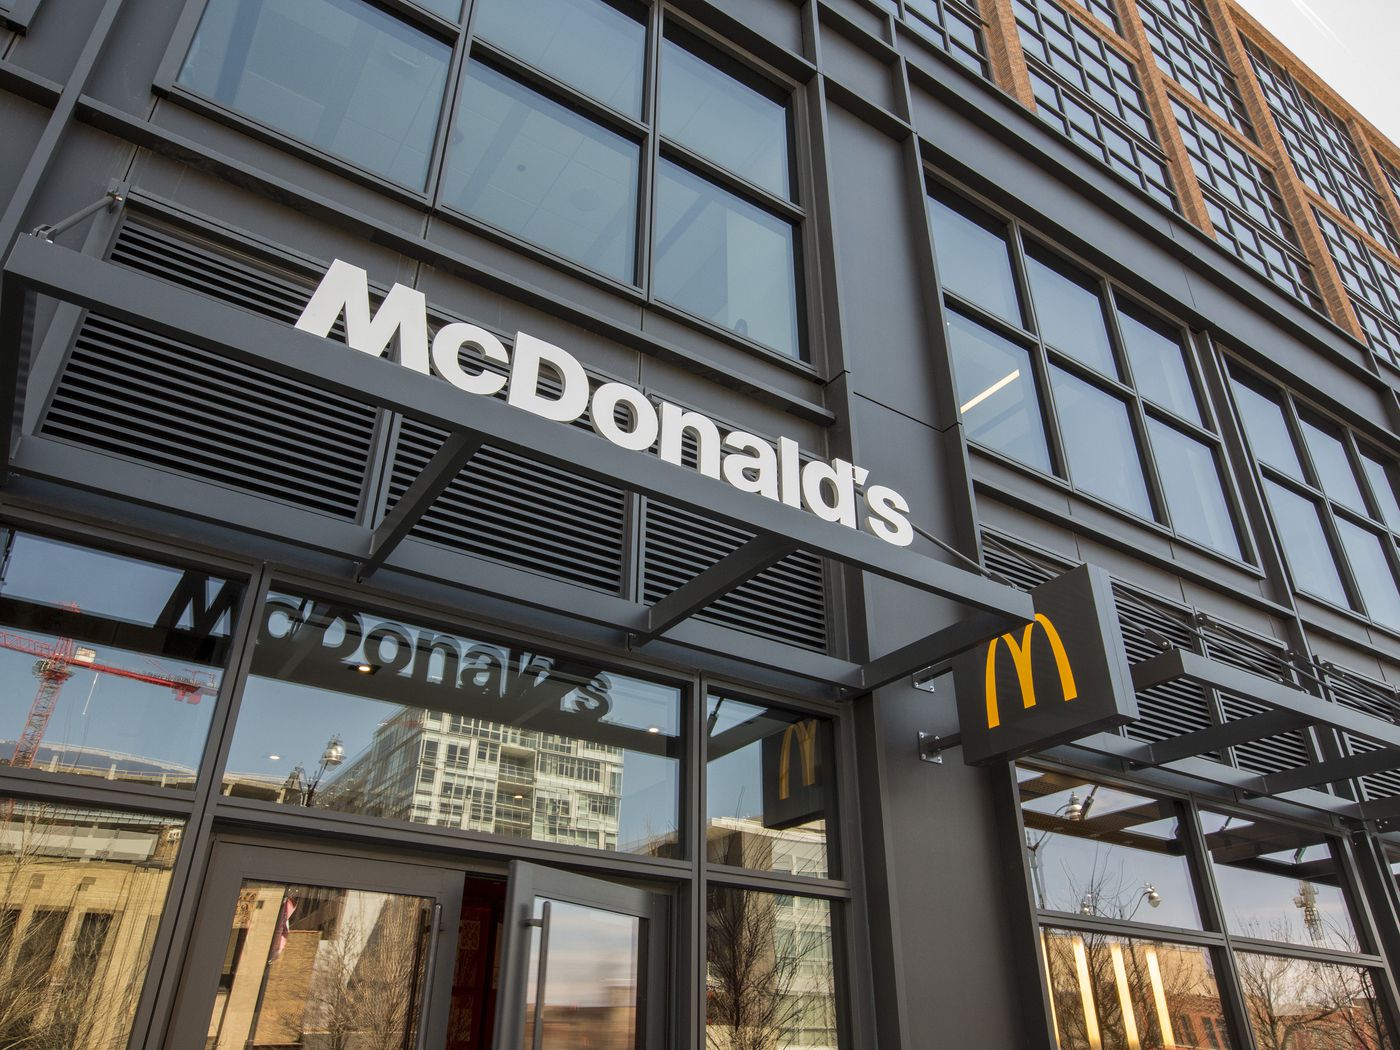 McDonalds thưởng cho nhân viên phiếu quà tặng giảm giá, cũng như hưởng nhiều cơ hội học tập và phát triển.